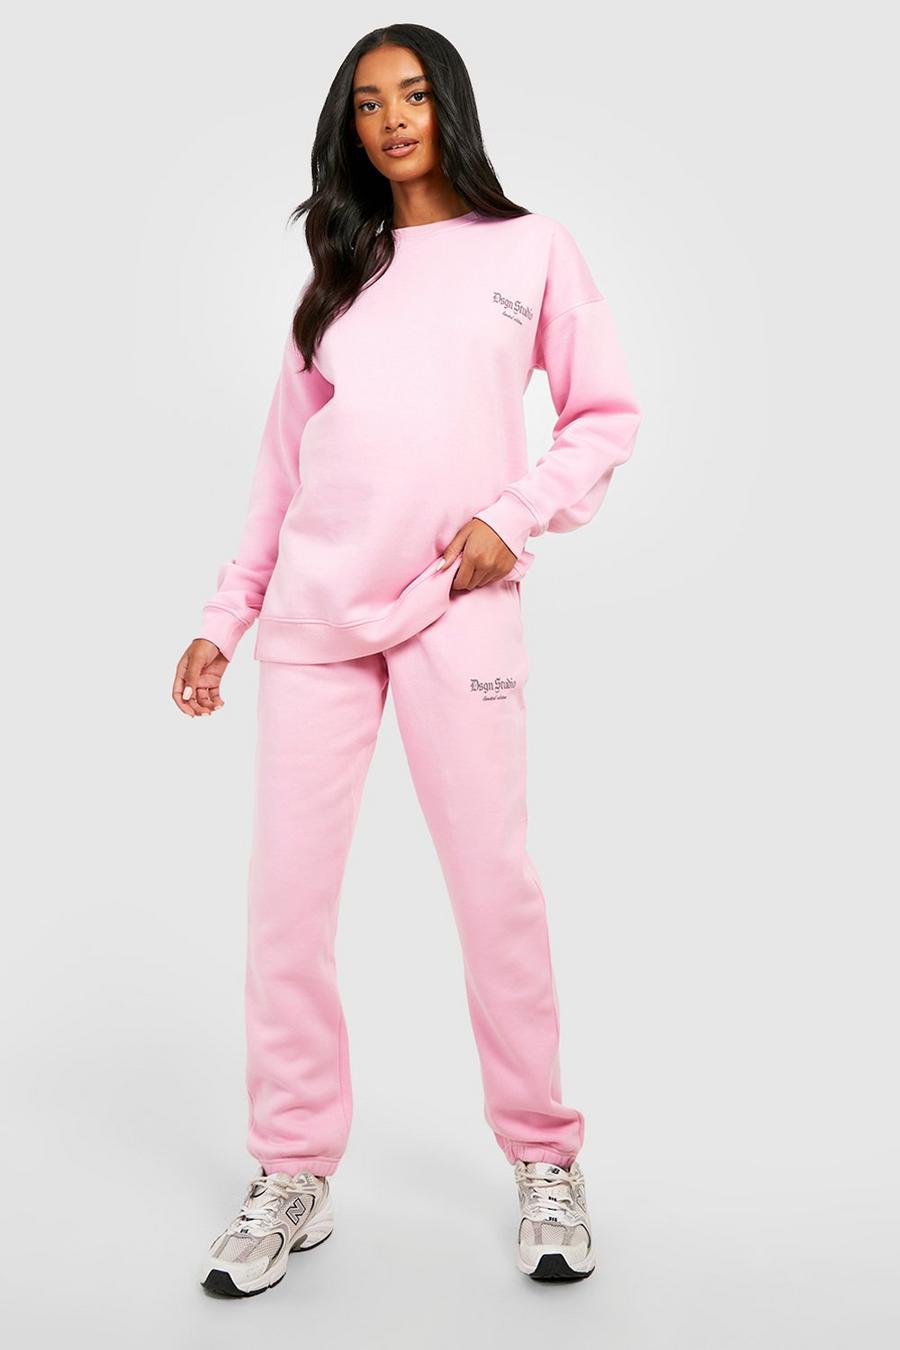 Pantalón deportivo Premamá oversize con estampado Dsgn Studio reflectante, Pink rosa